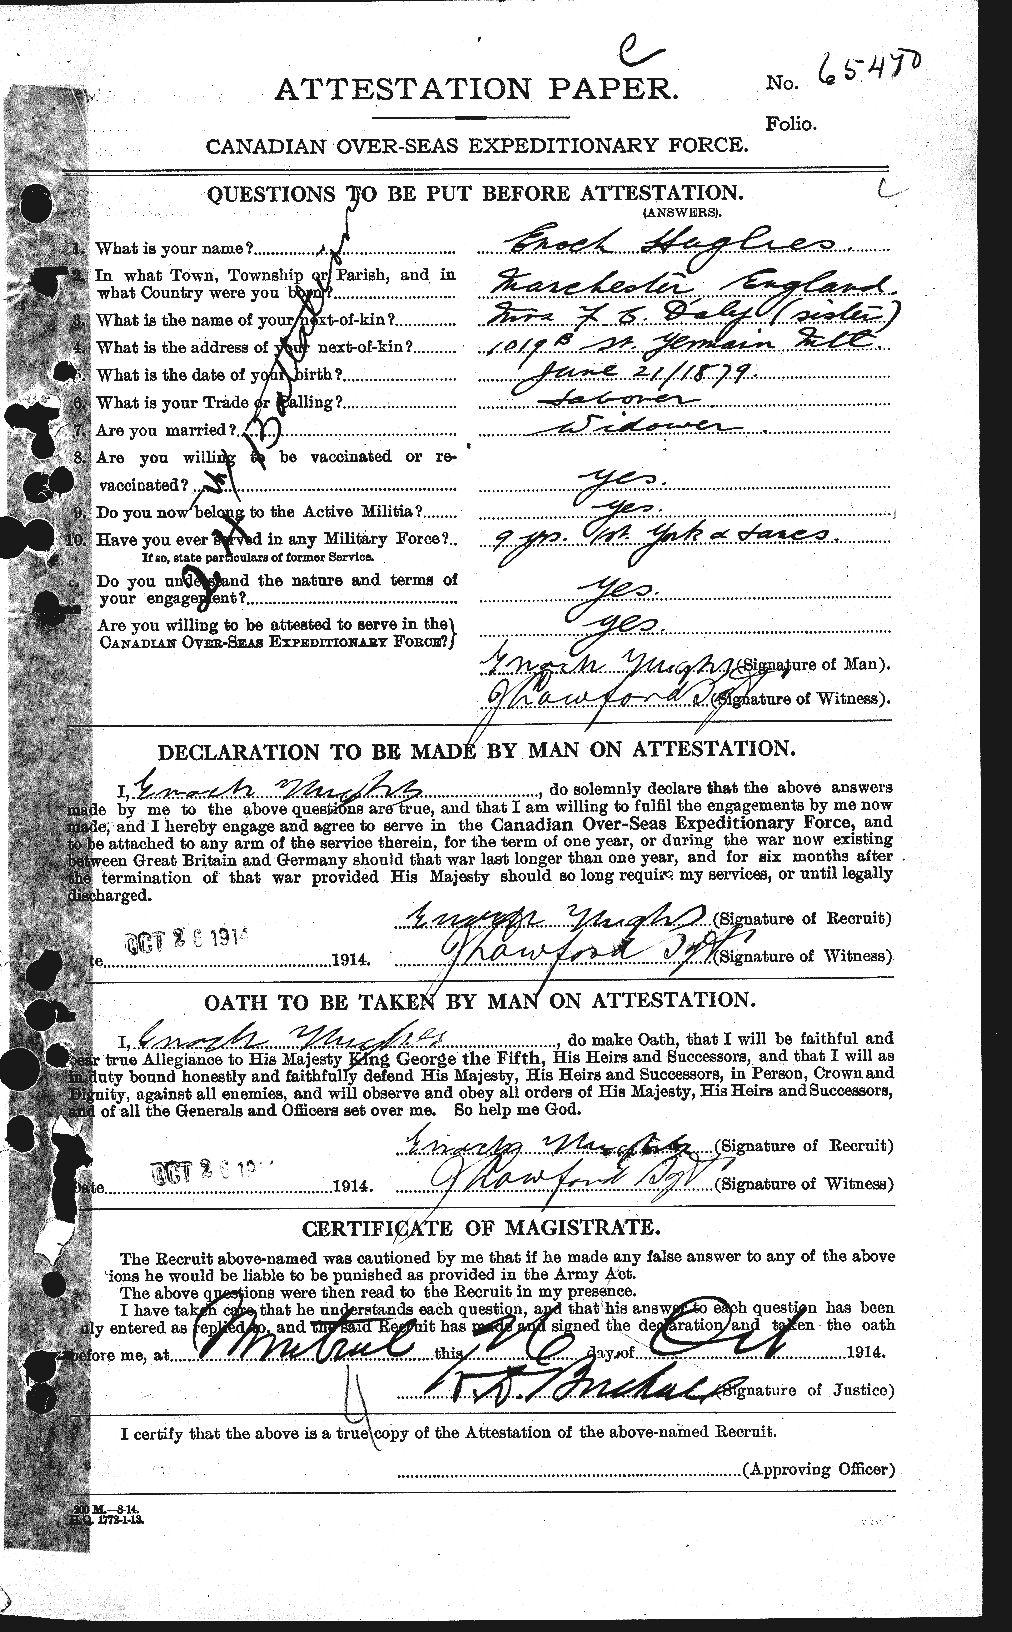 Dossiers du Personnel de la Première Guerre mondiale - CEC 402706a